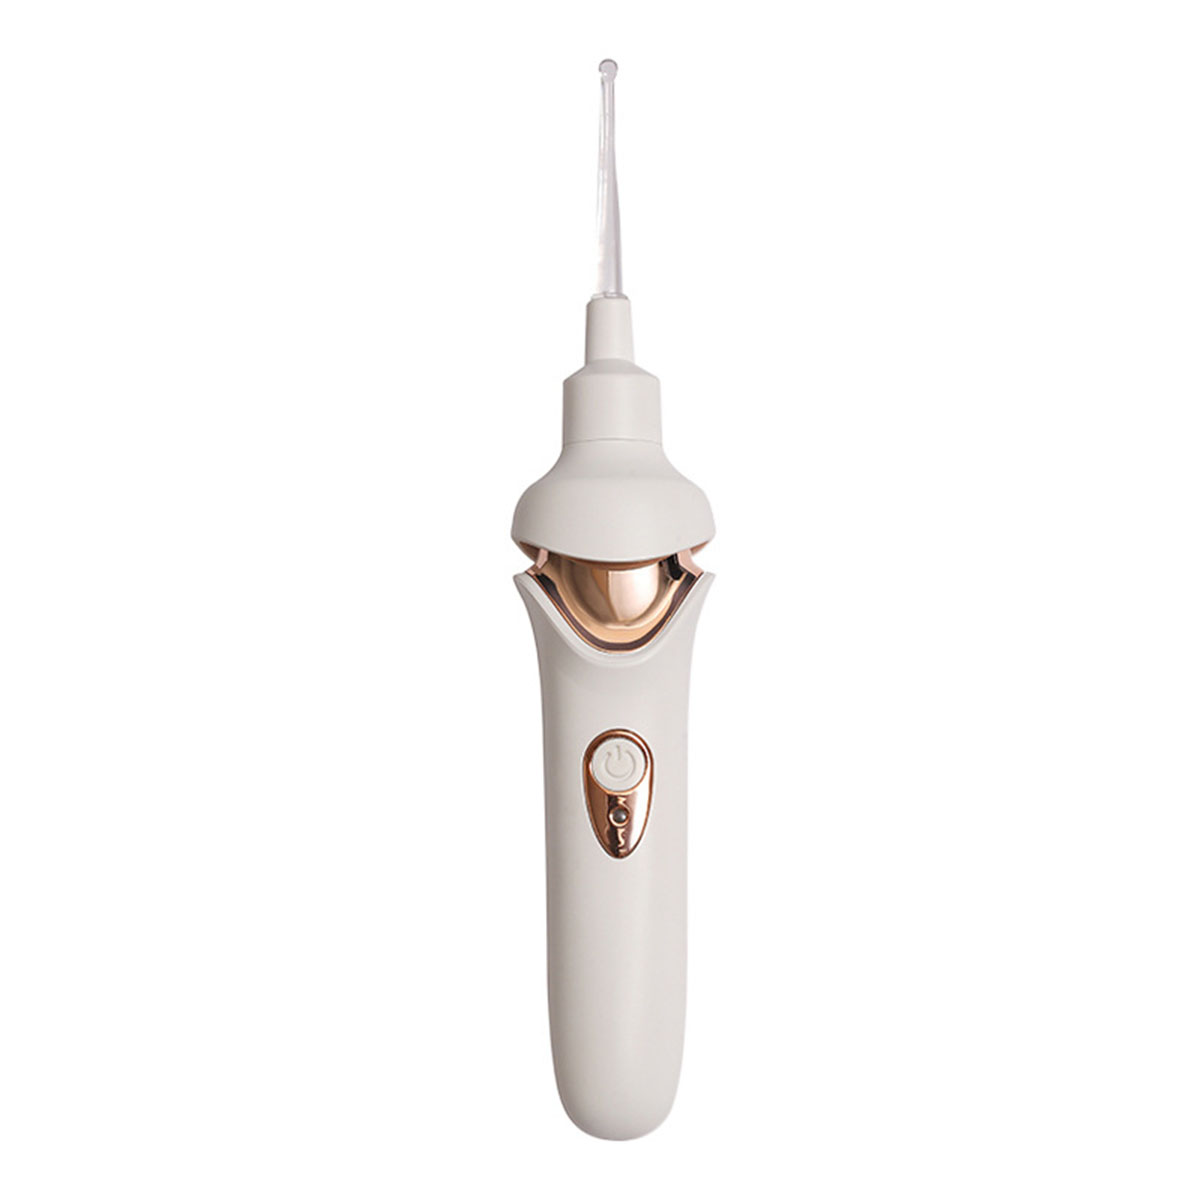 BRIGHTAKE Sicherheit Elektrische Reinigung Ohrenpflege Elektrische Ohrpflücker LED-Sauger